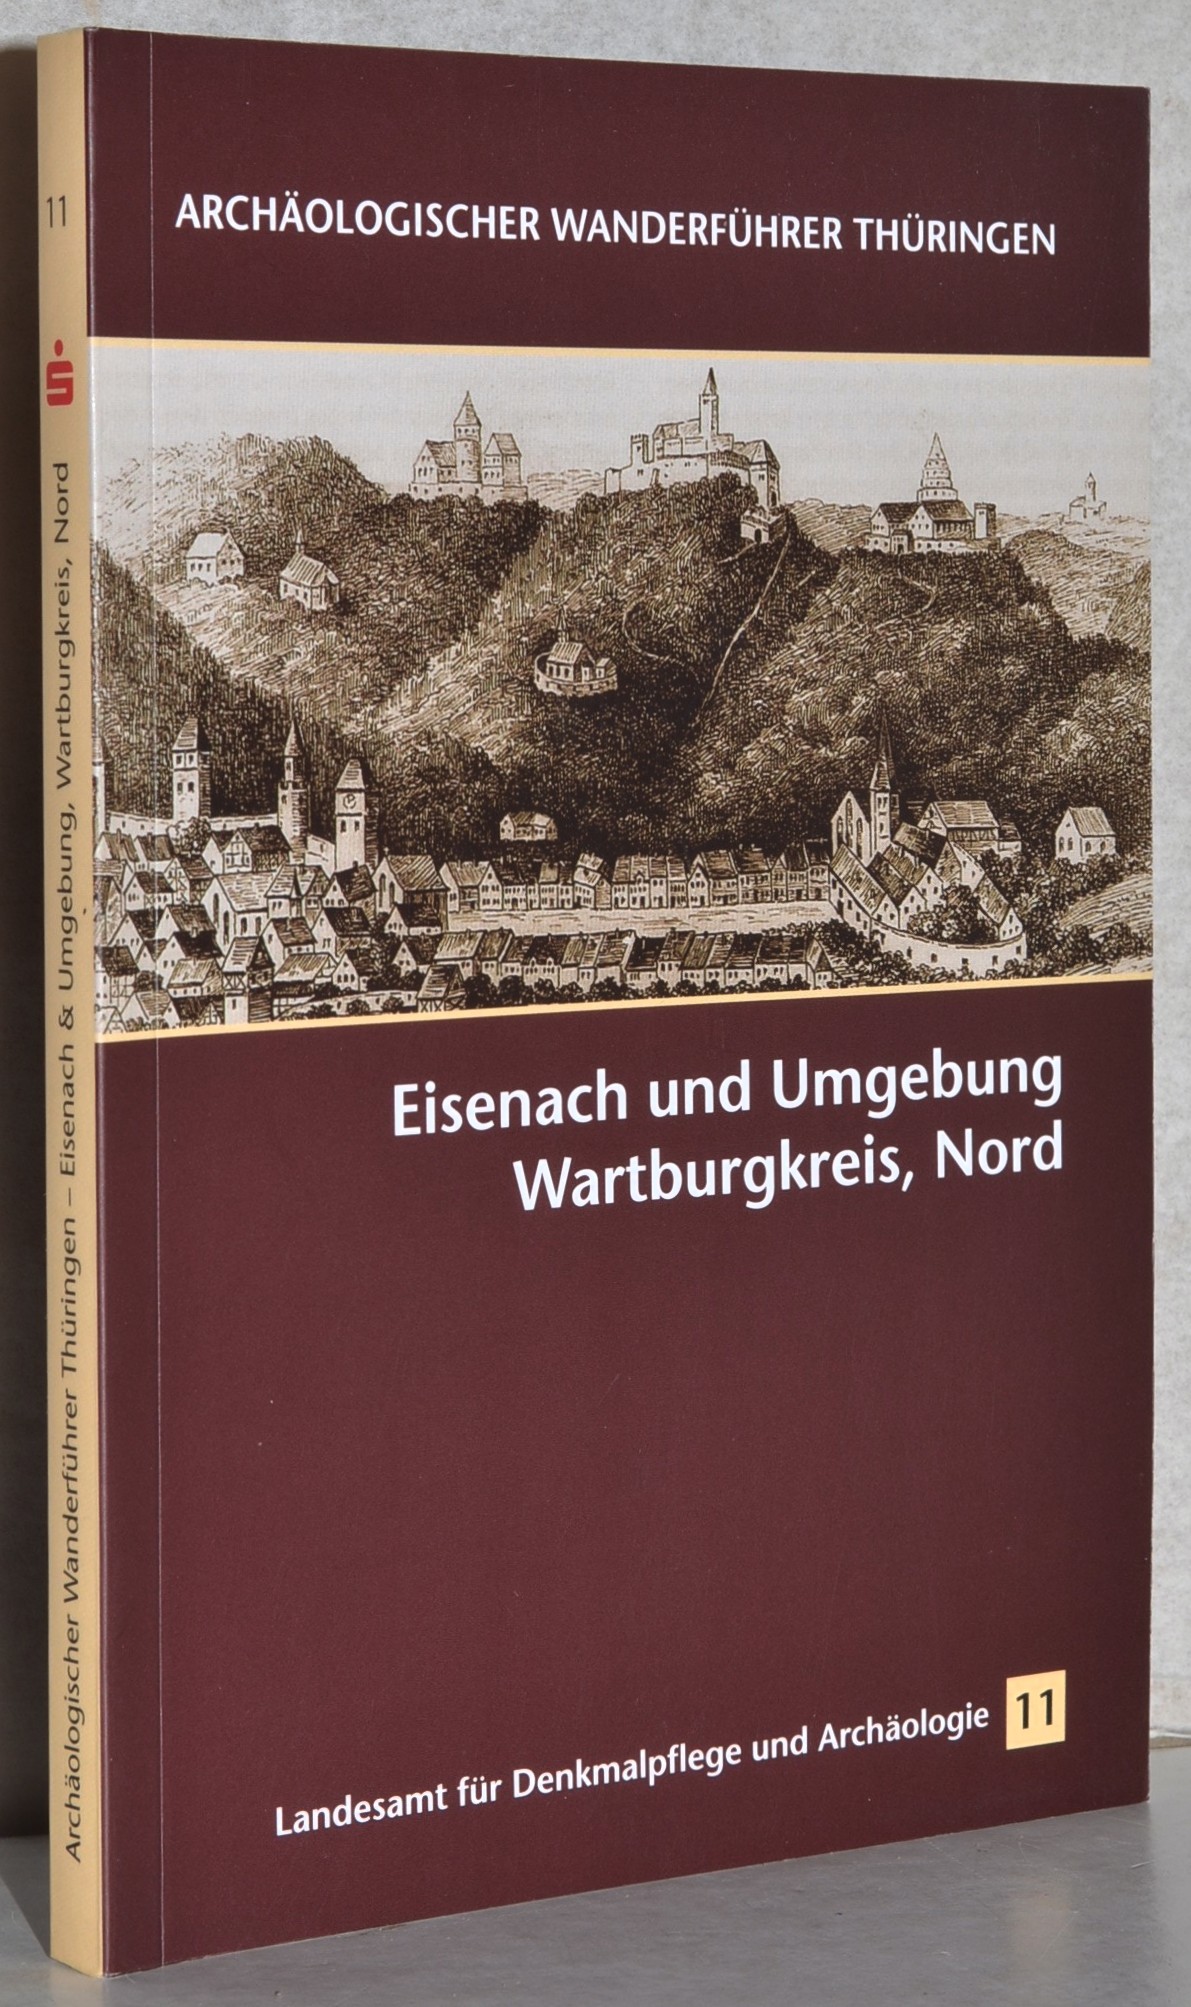 Archäologischer Wanderführer - Heft 11: Eisenach und Umgebung, Wartburgkreis, Nord. - Ostritz, Sven (Hrsg.)